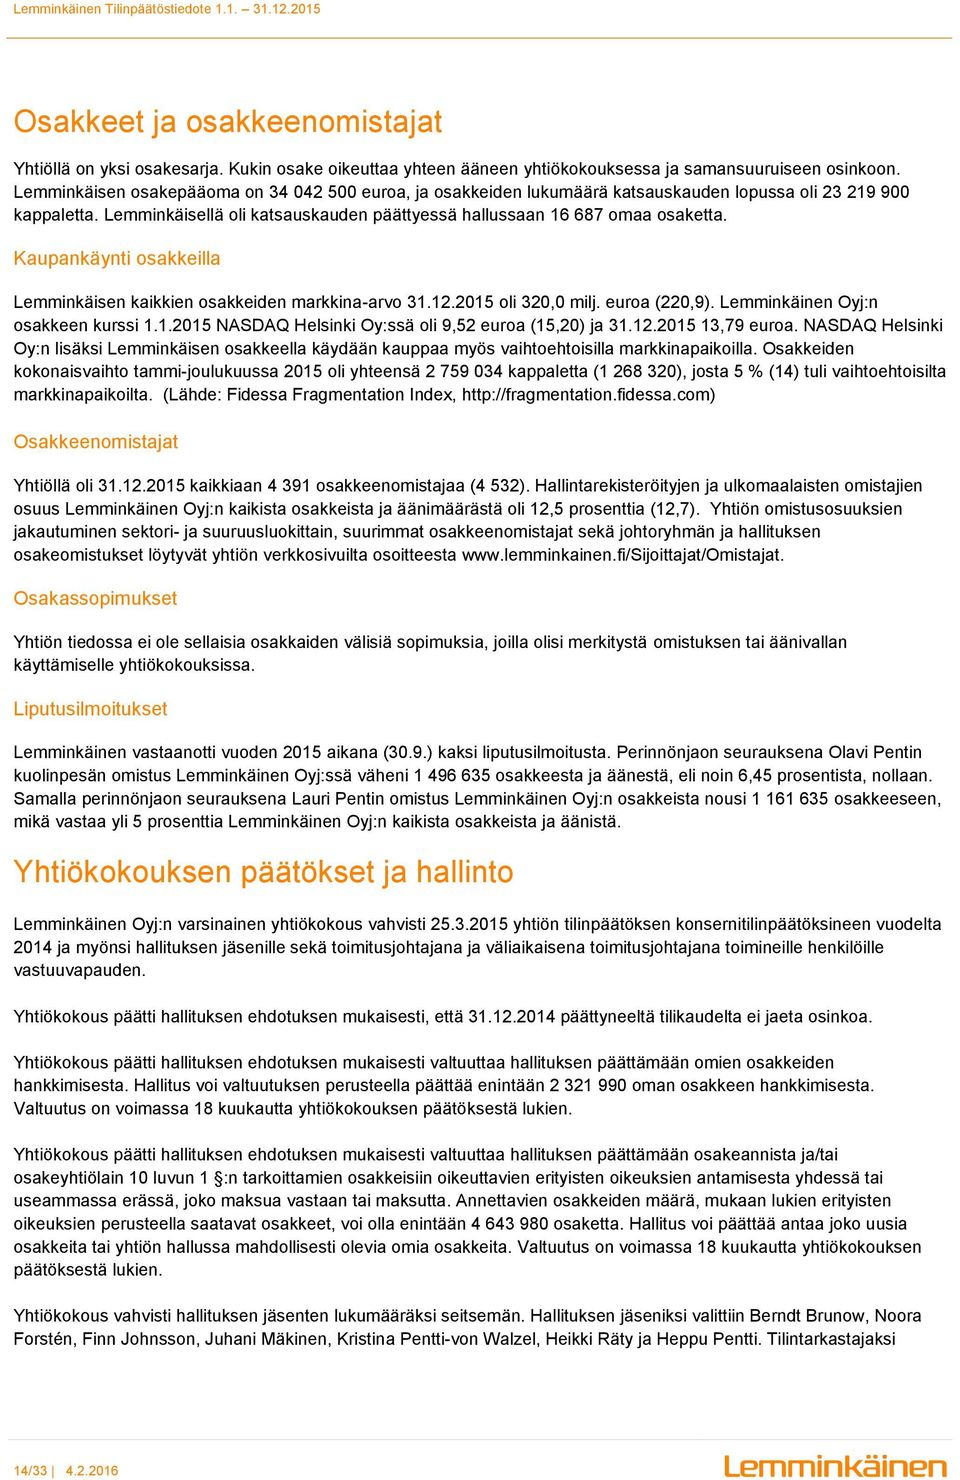 Kaupankäynti osakkeilla Lemminkäisen kaikkien osakkeiden markkina-arvo 31.12.2015 oli 320,0 milj. euroa (220,9). Lemminkäinen Oyj:n osakkeen kurssi 1.1.2015 NASDAQ Helsinki Oy:ssä oli 9,52 euroa (15,20) ja 31.